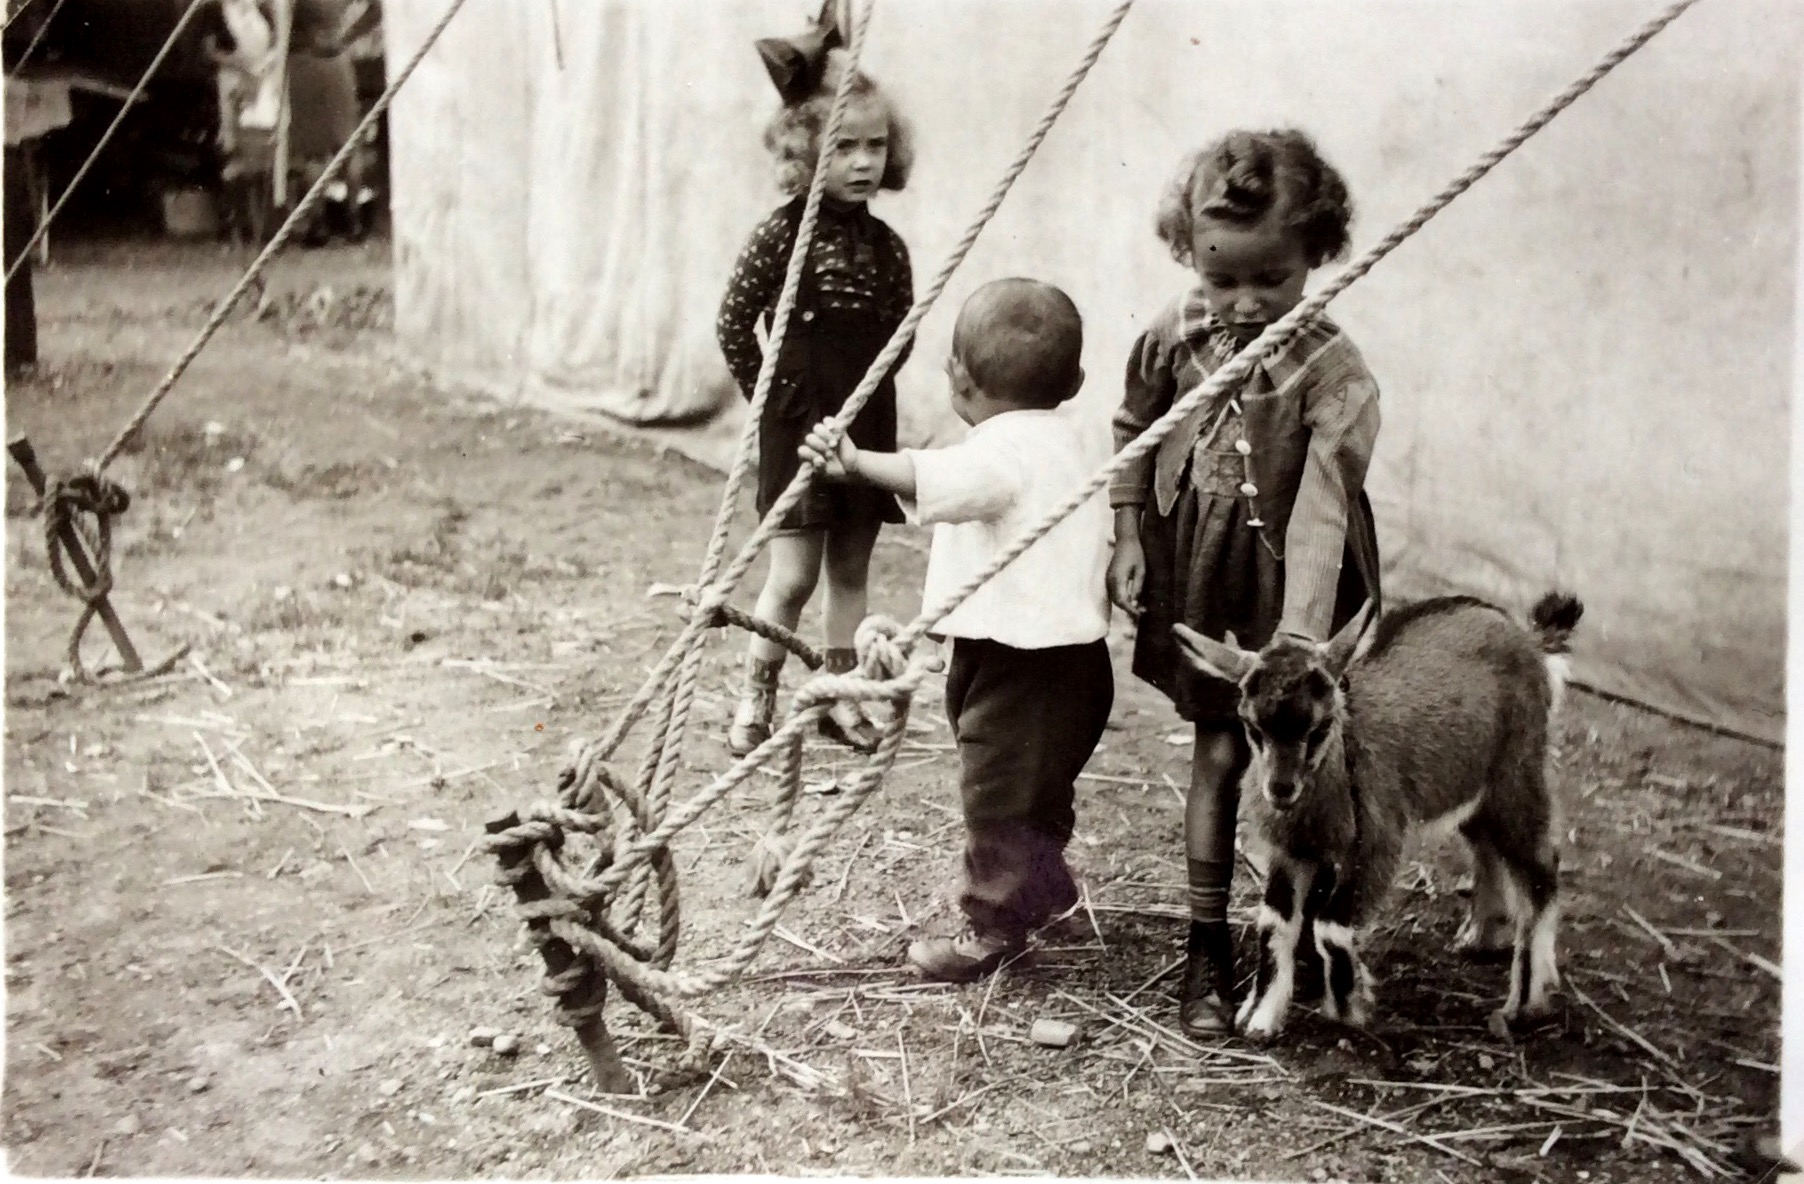 Circus visit, 1942